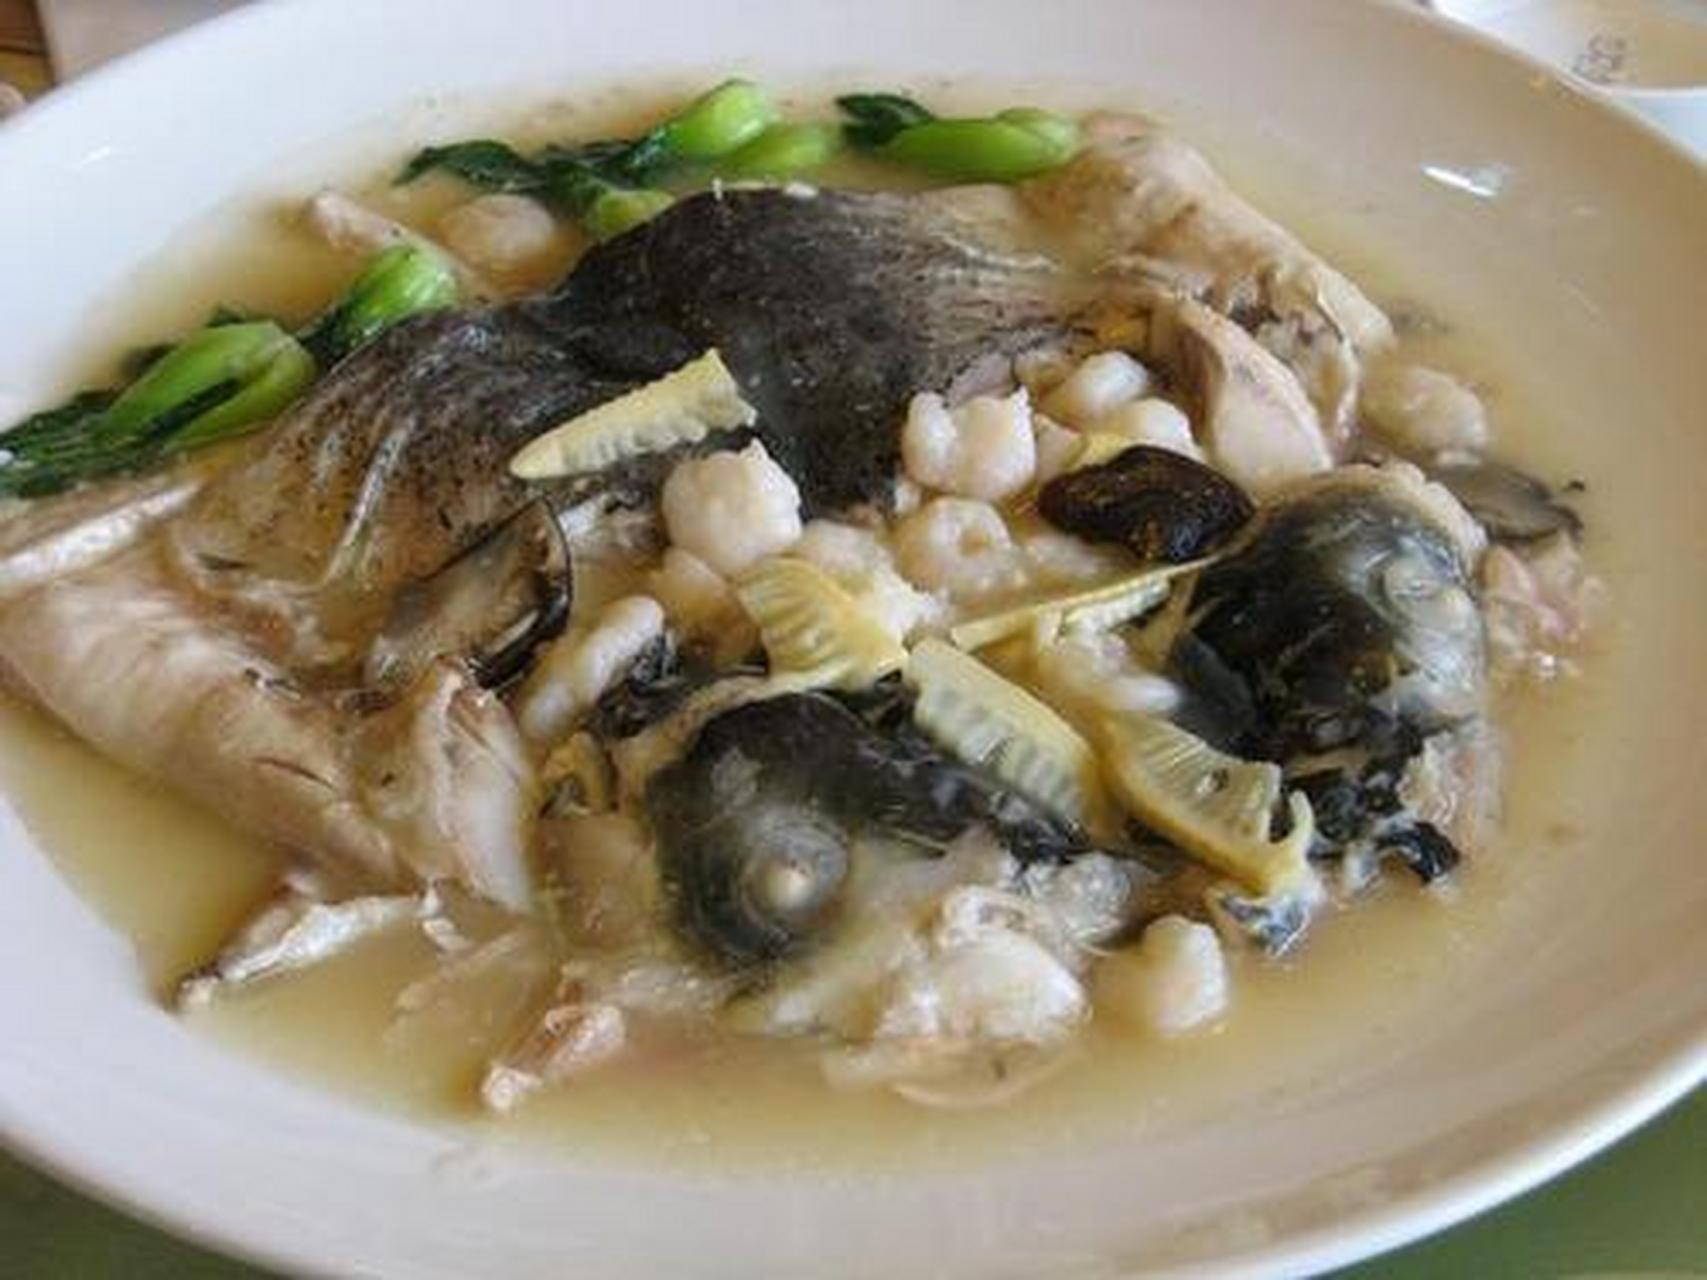 用烩制的方法将鲢鱼头煮熟,煮出来的鱼肉不仅吃起来很嫩,而且它的汤汁